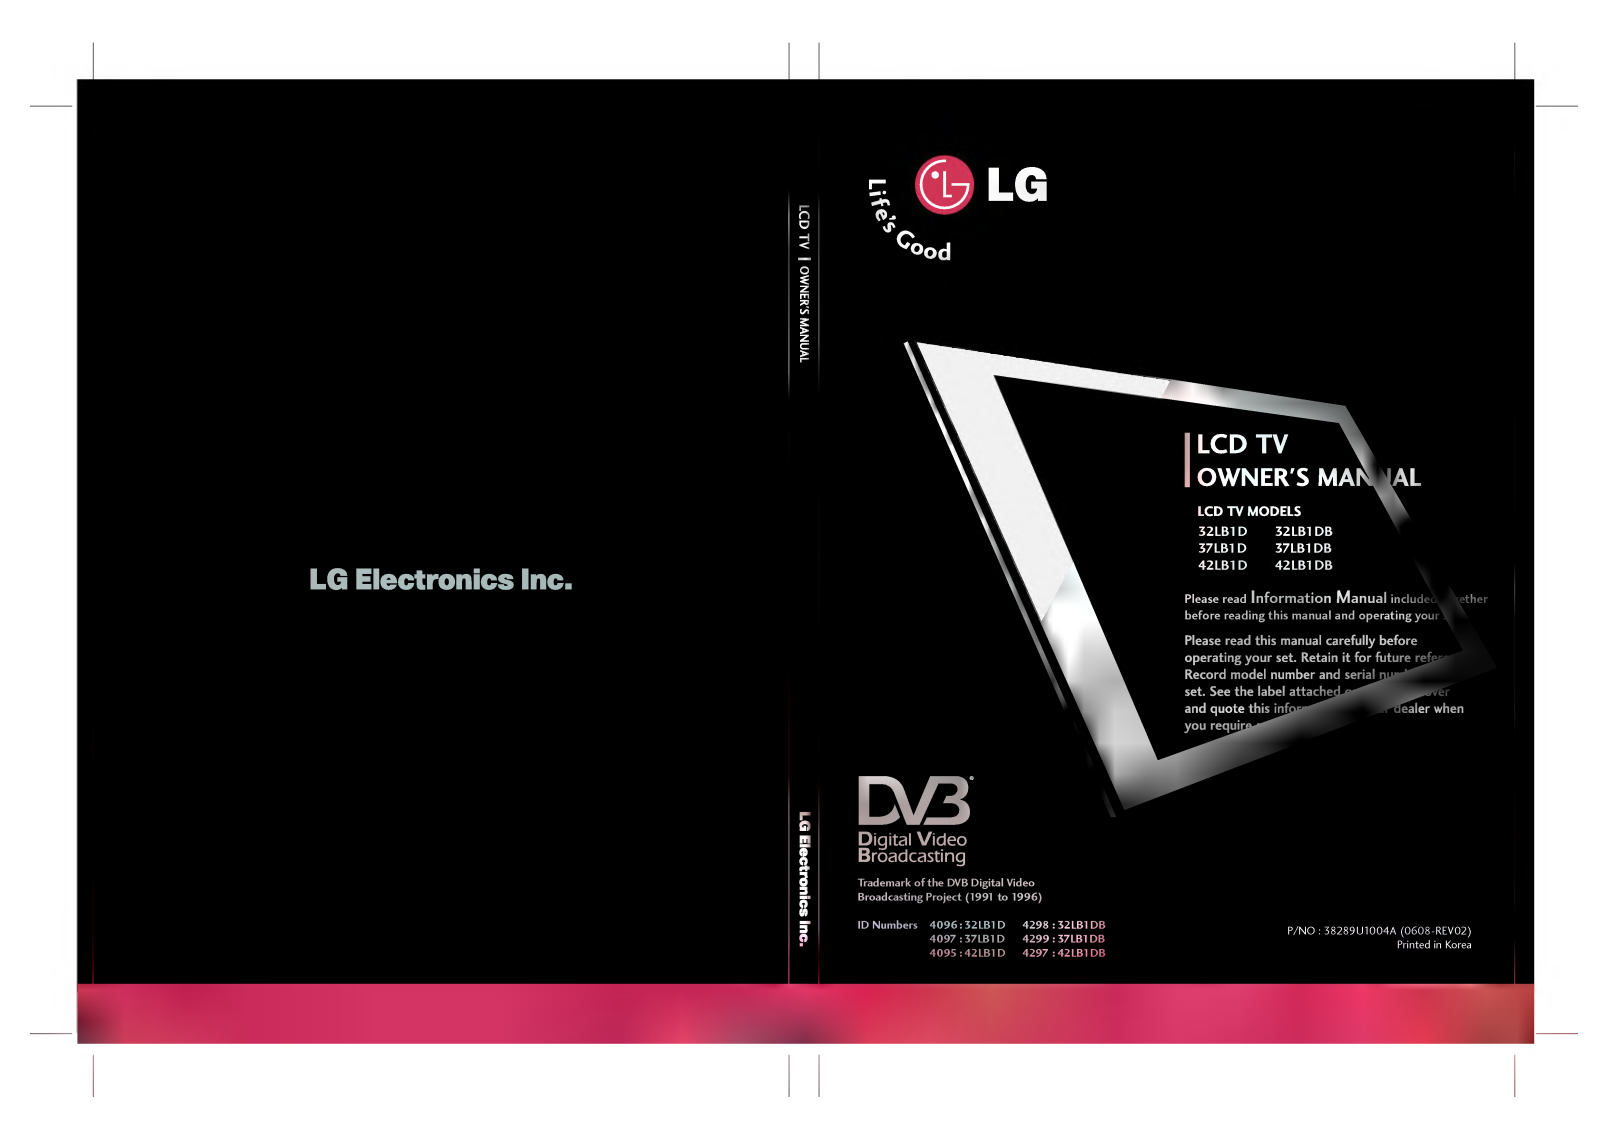 LG 32LB1D Owner’s Manual